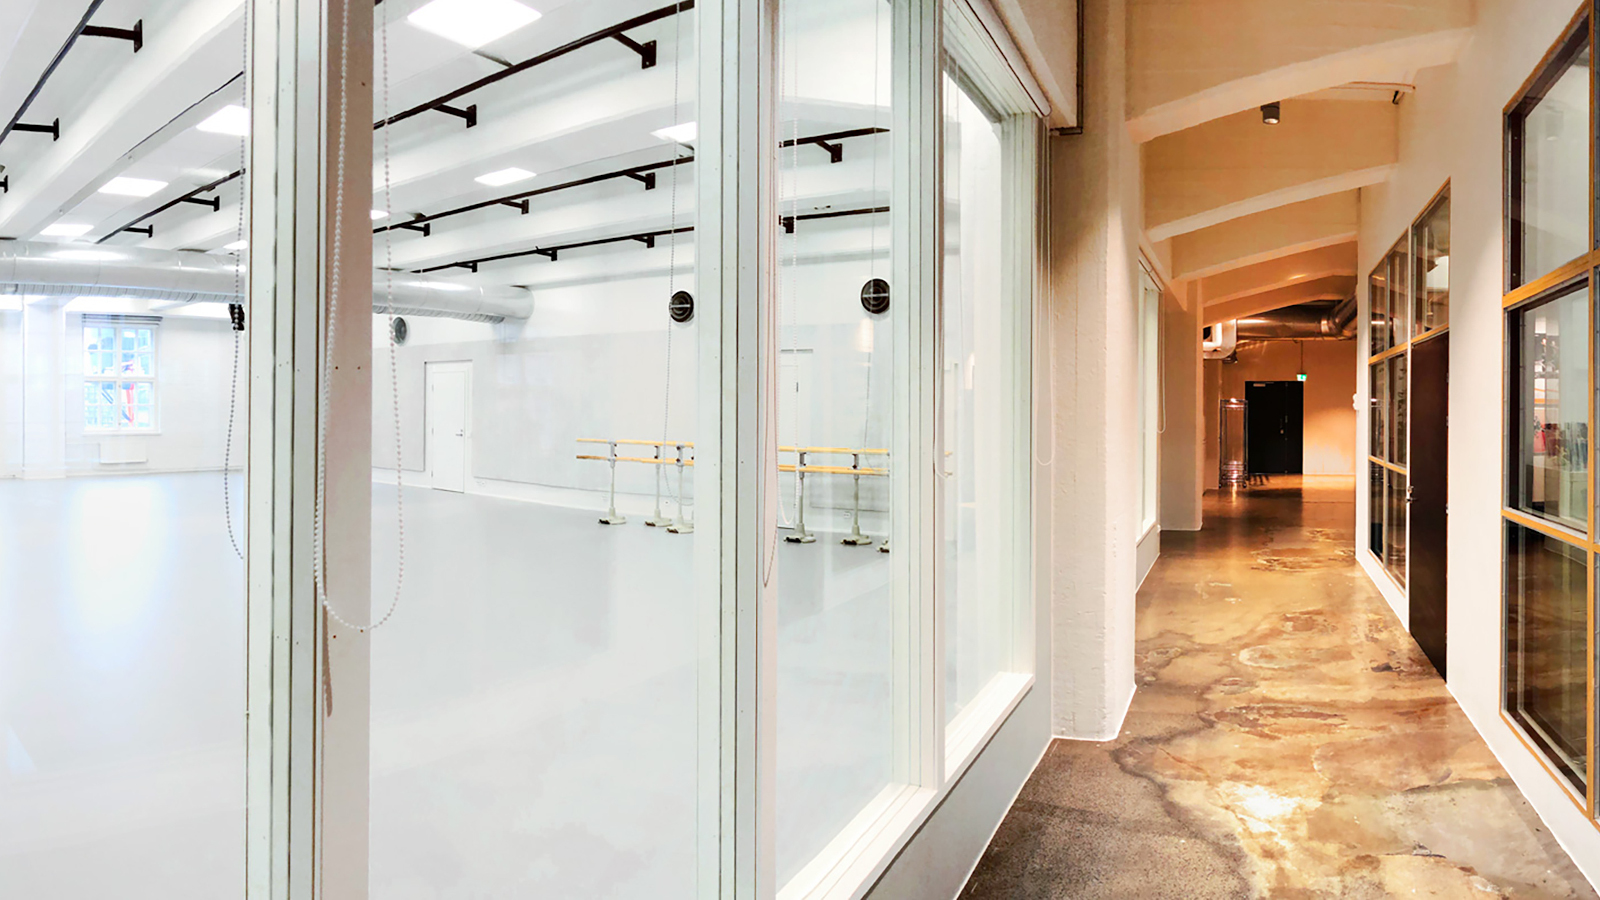 Kuvassa on Tero Saarinen Companyn uudet tilat. Oikealla on käytävää, jossa on lasia ja vaalean ruskeita puuosia.  Vasemmalla on valkea iso tila.